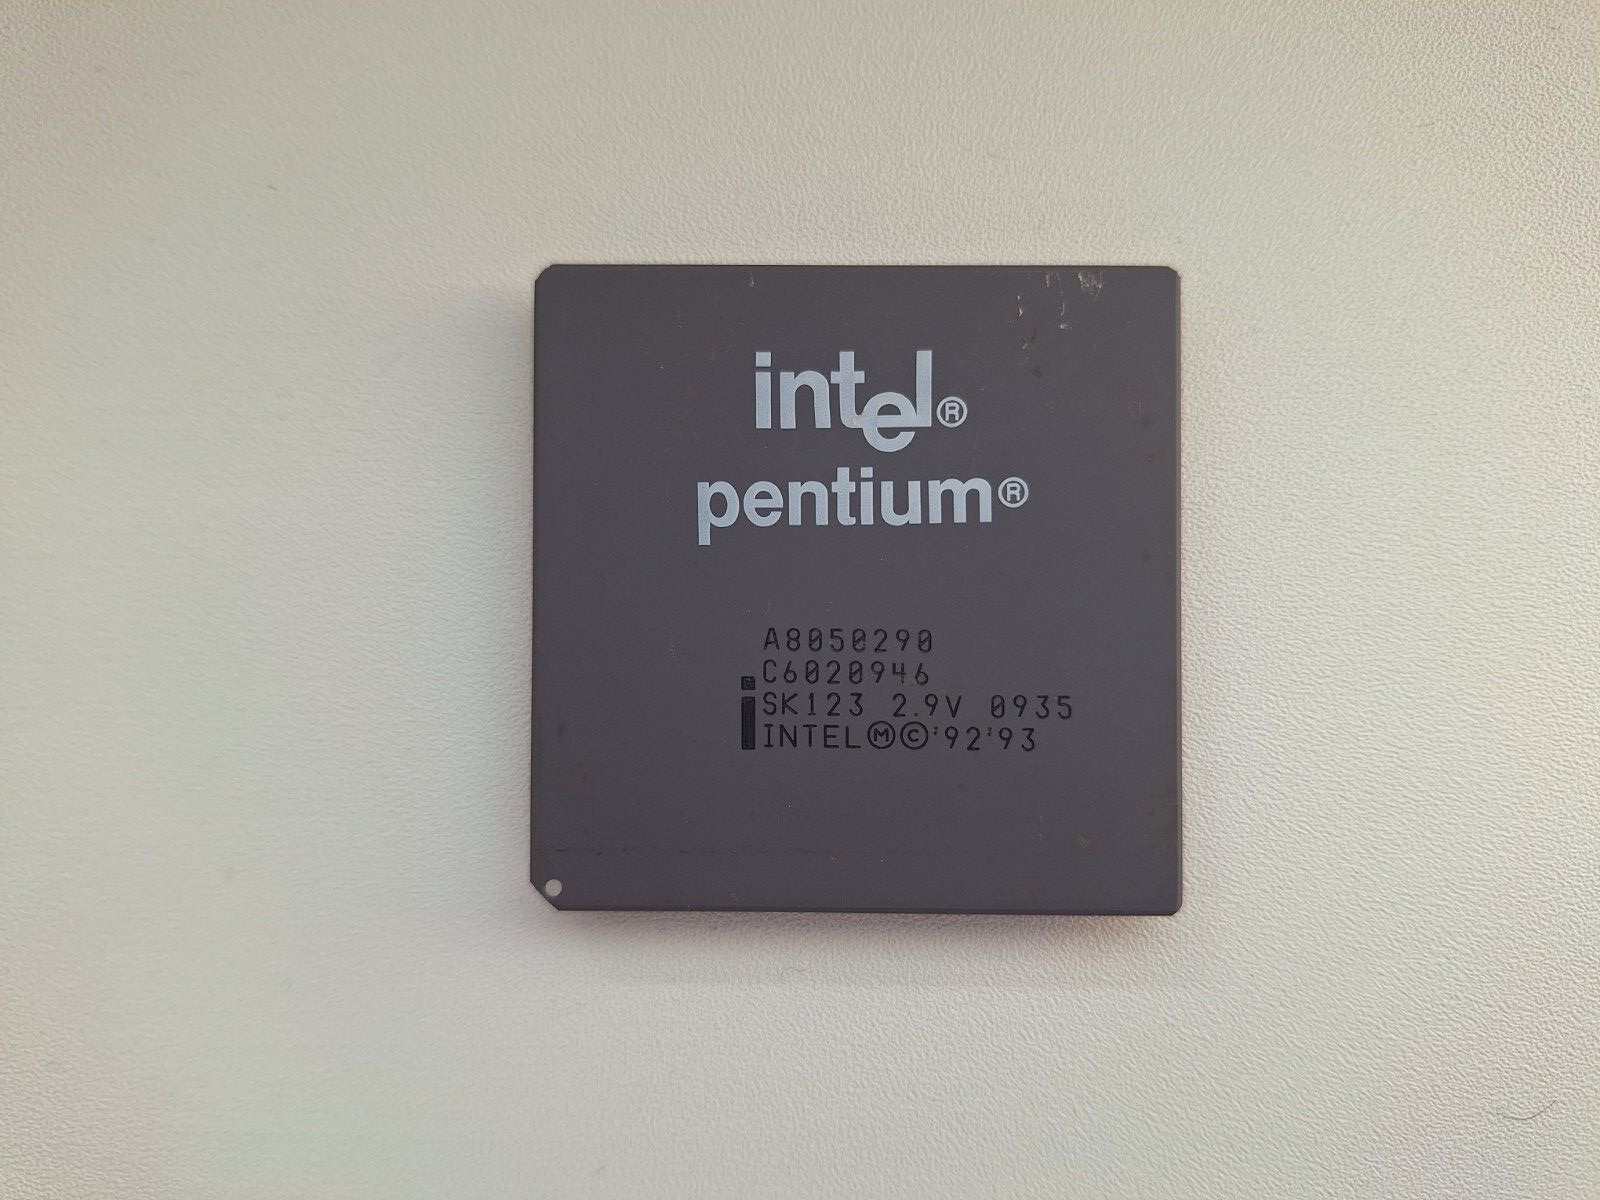 Intel Pentium 90 A8050290 SK123 2.9V rare mobile Pentium 90 vintage CPU GOLD